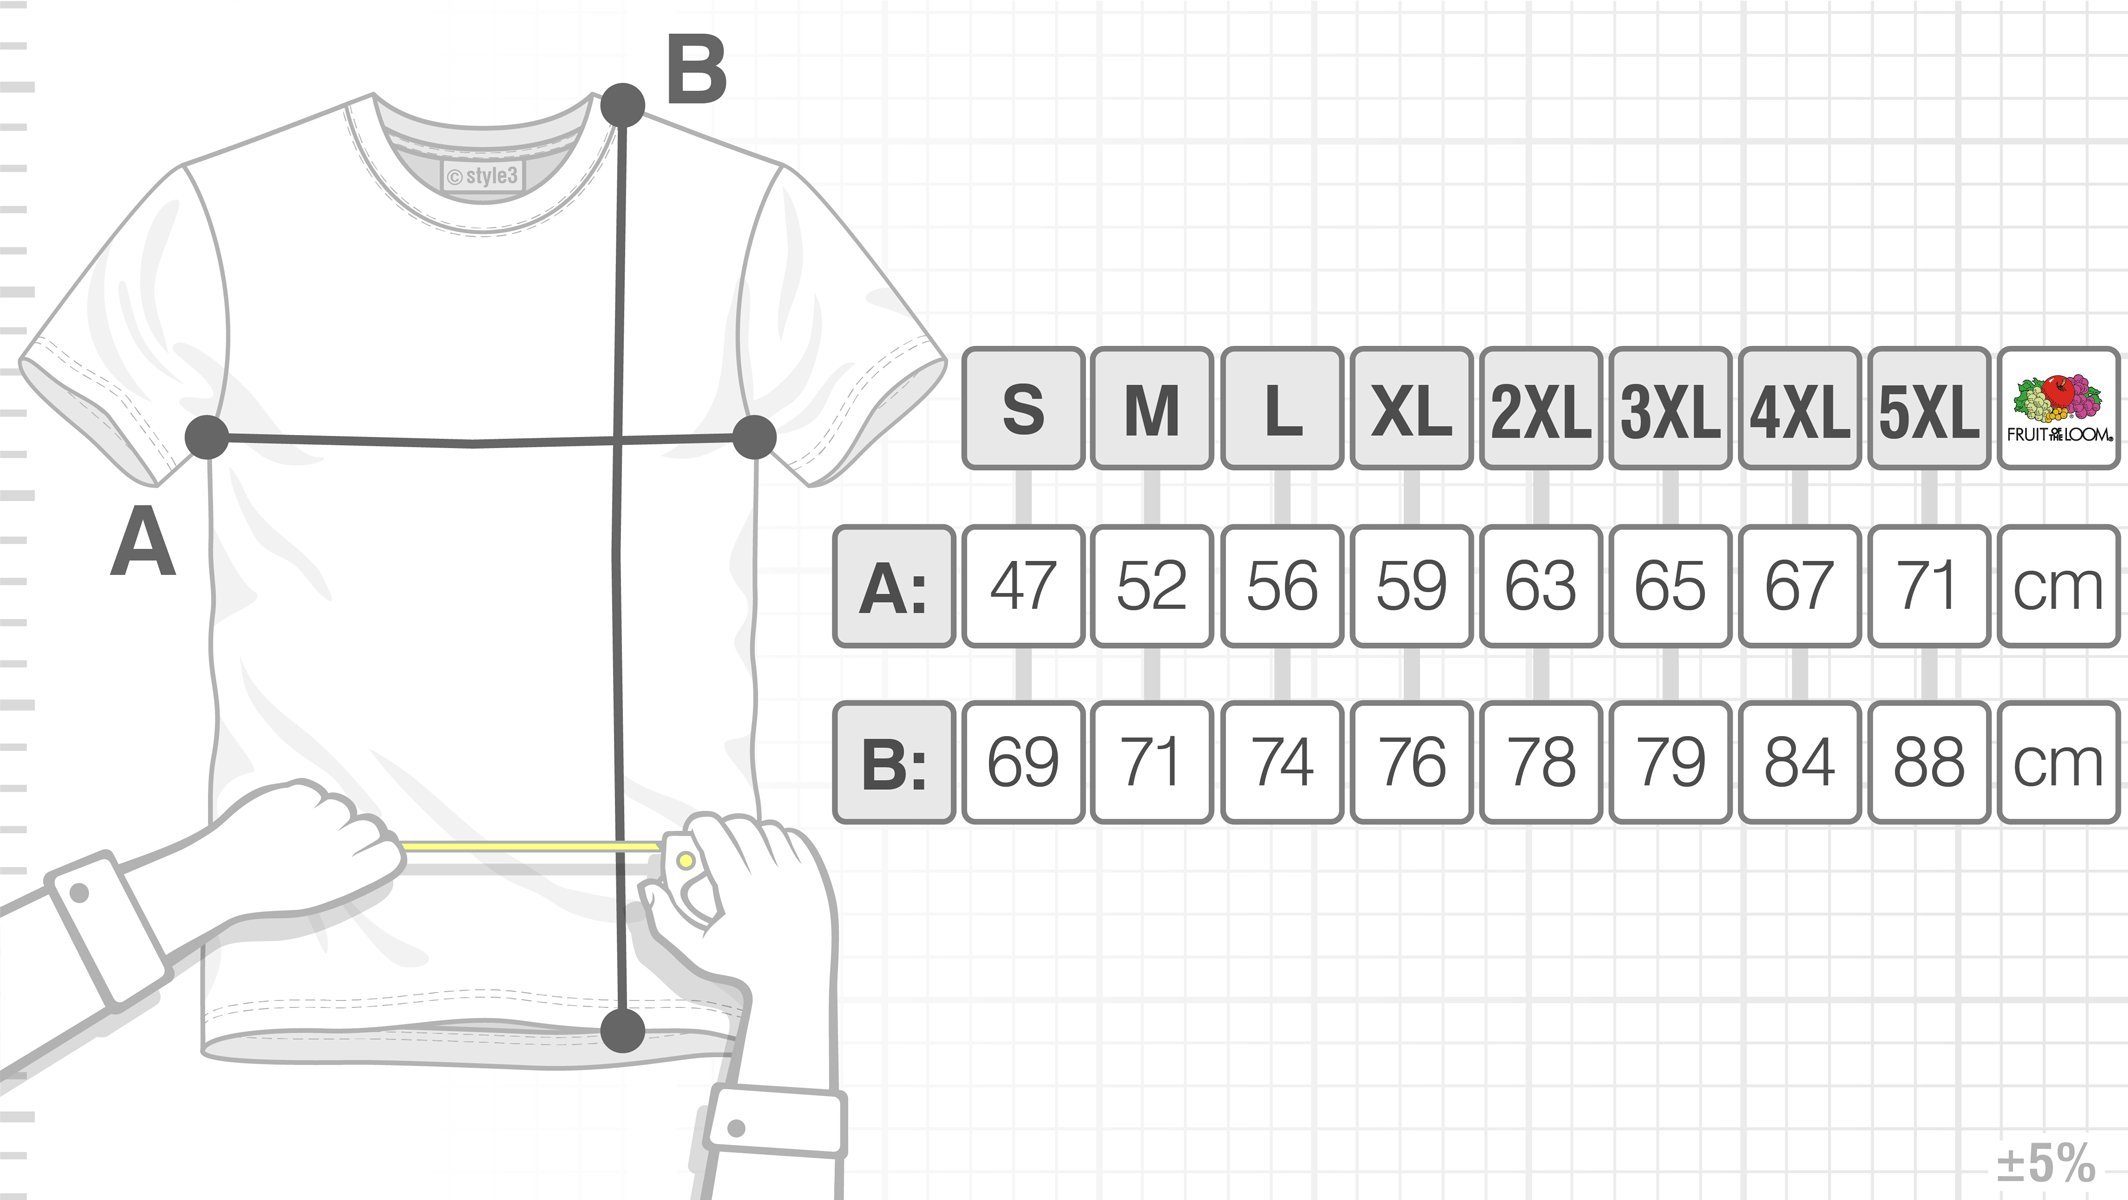 Penrose Escher Herren Sheldon gelb Dreieck Print-Shirt bang Big T-Shirt Theory Cooper würfel Cube style3